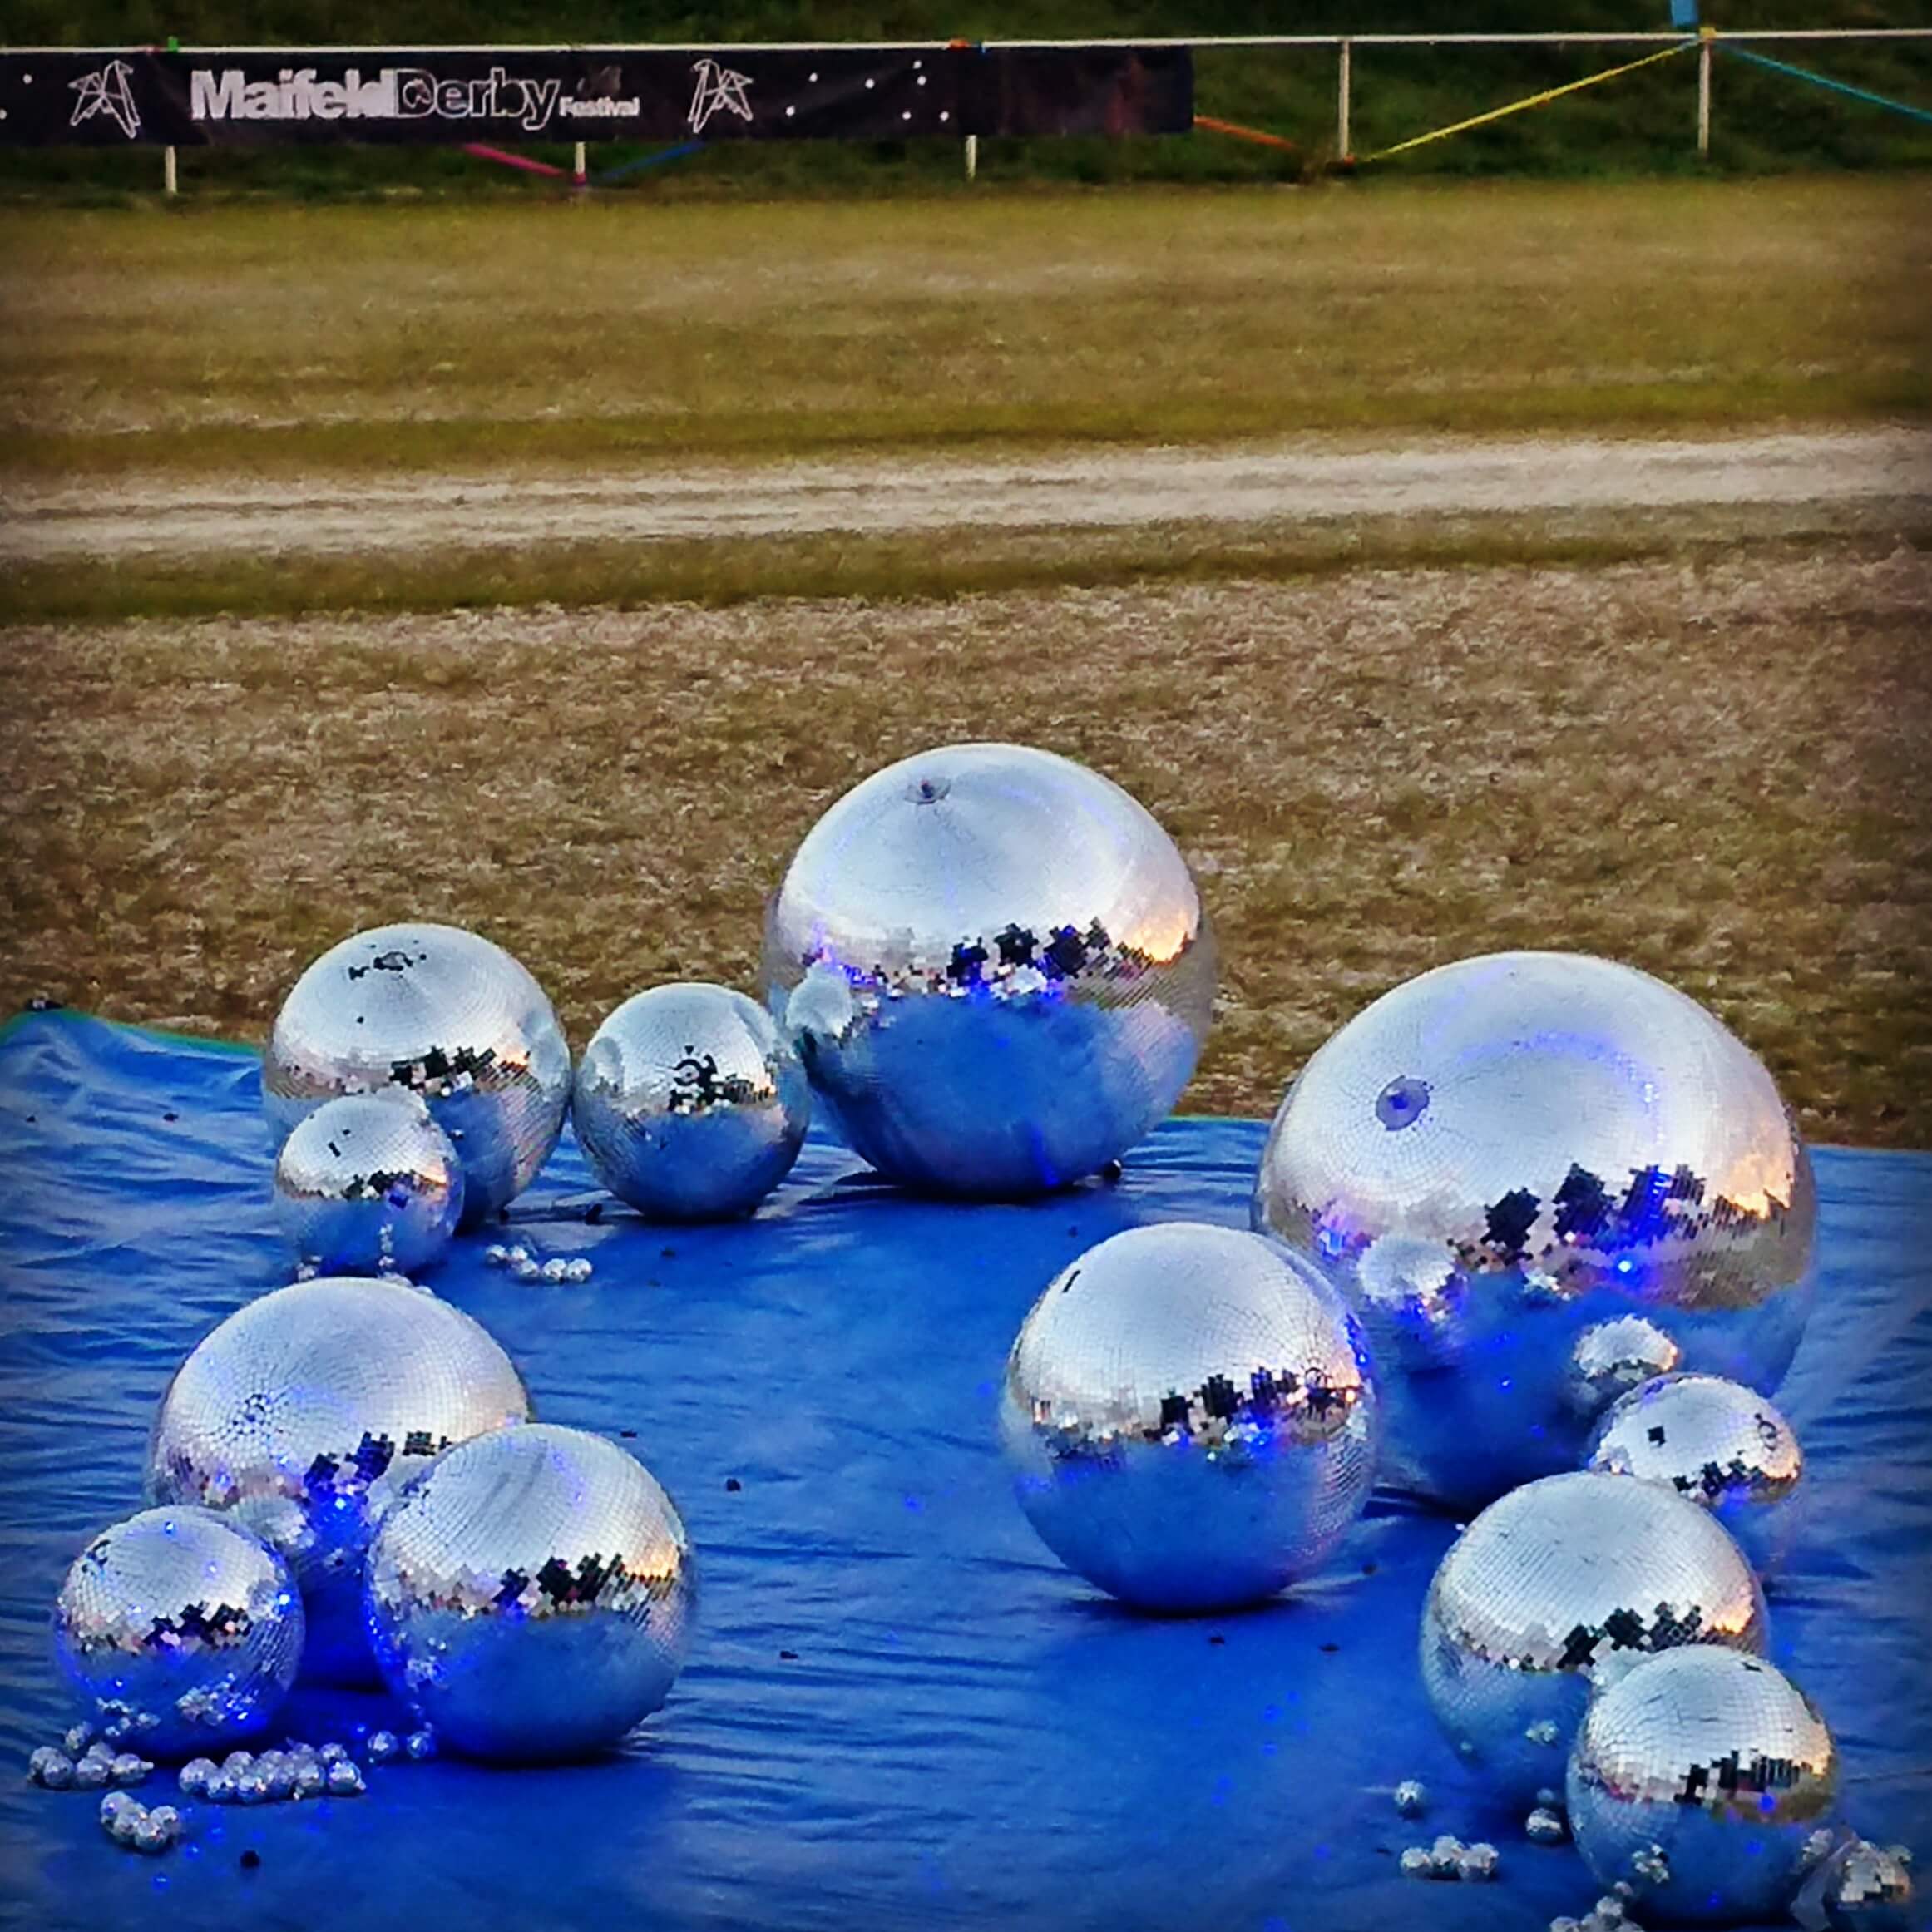 Momentaufnahme vom Maifeld Derby 2018 - die Disco-Kugeln ruhen sich aus. Ruhige Kugeln auf dem Maifeld Derby. Symbolbild für erstaunlich viel nicht-krachige Musik in 2018.